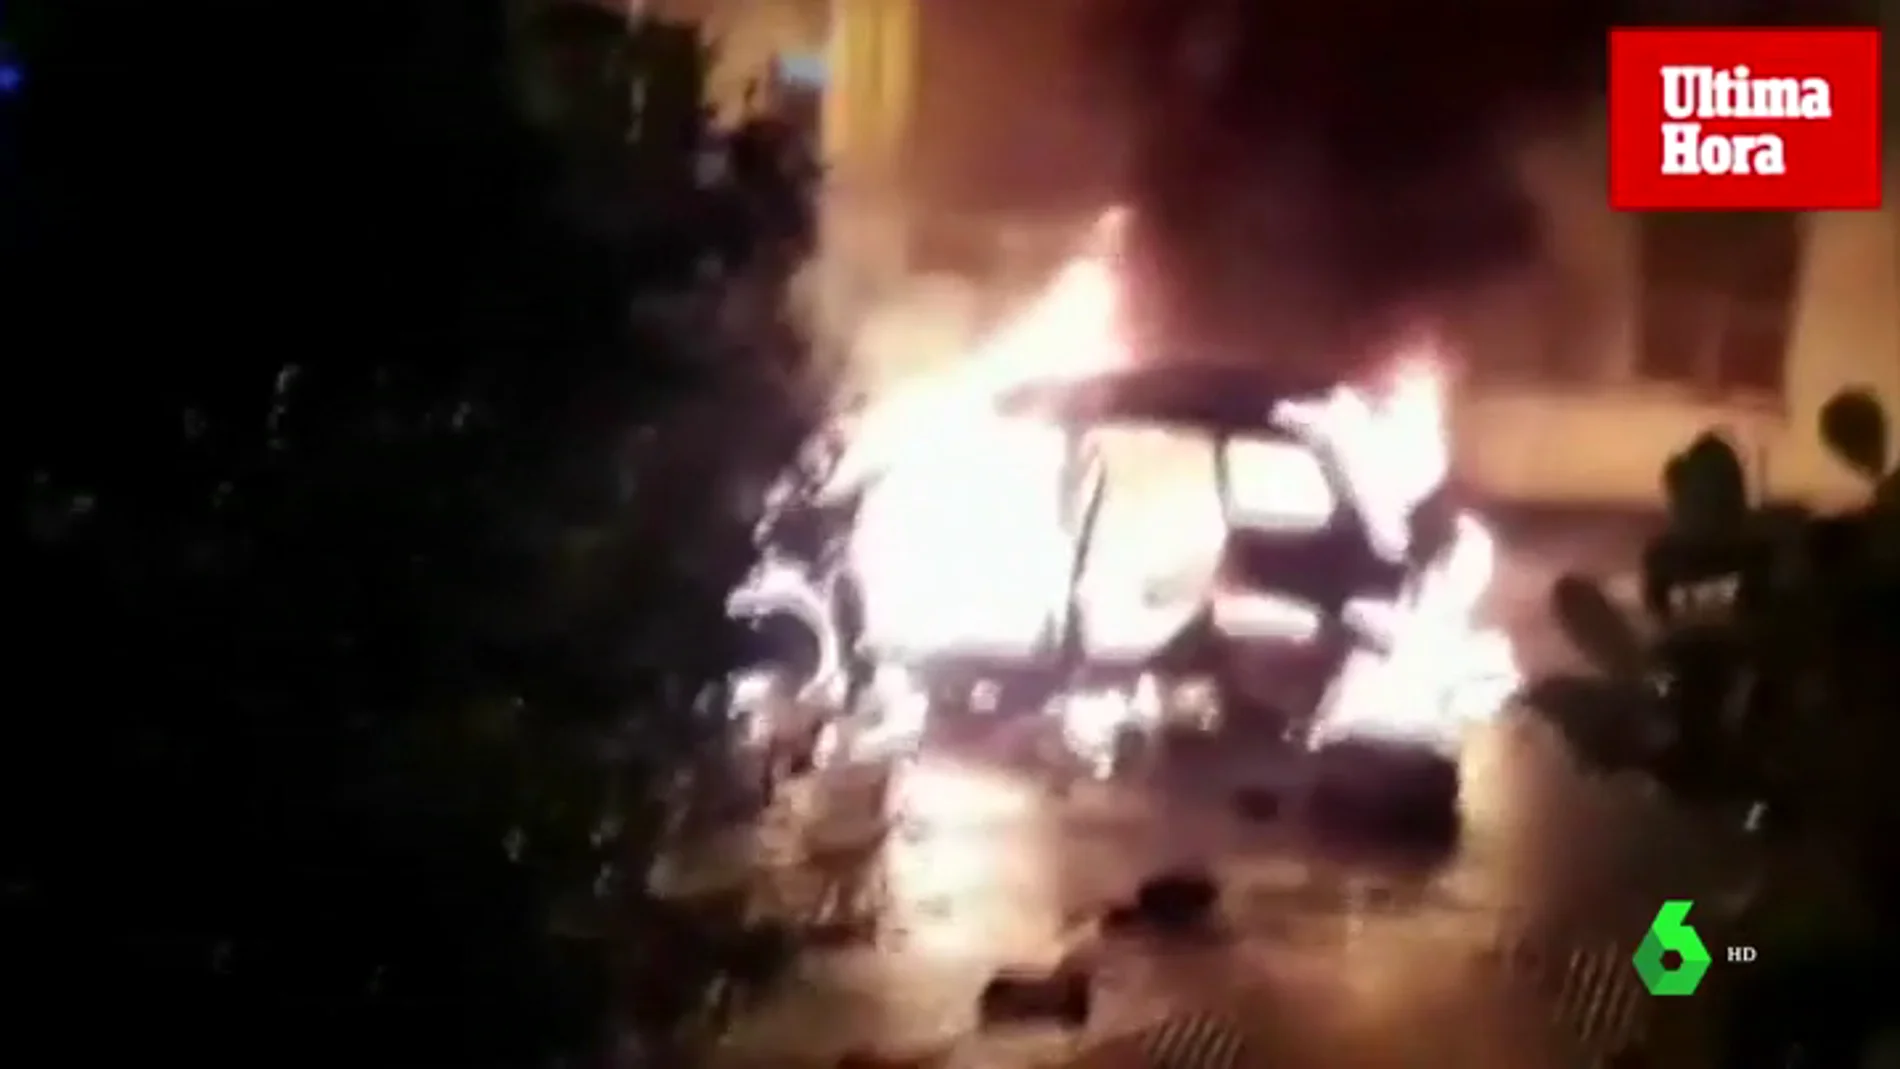 Una mujer quema el coche de su maltratador con él dentro tras sufrir una agresión